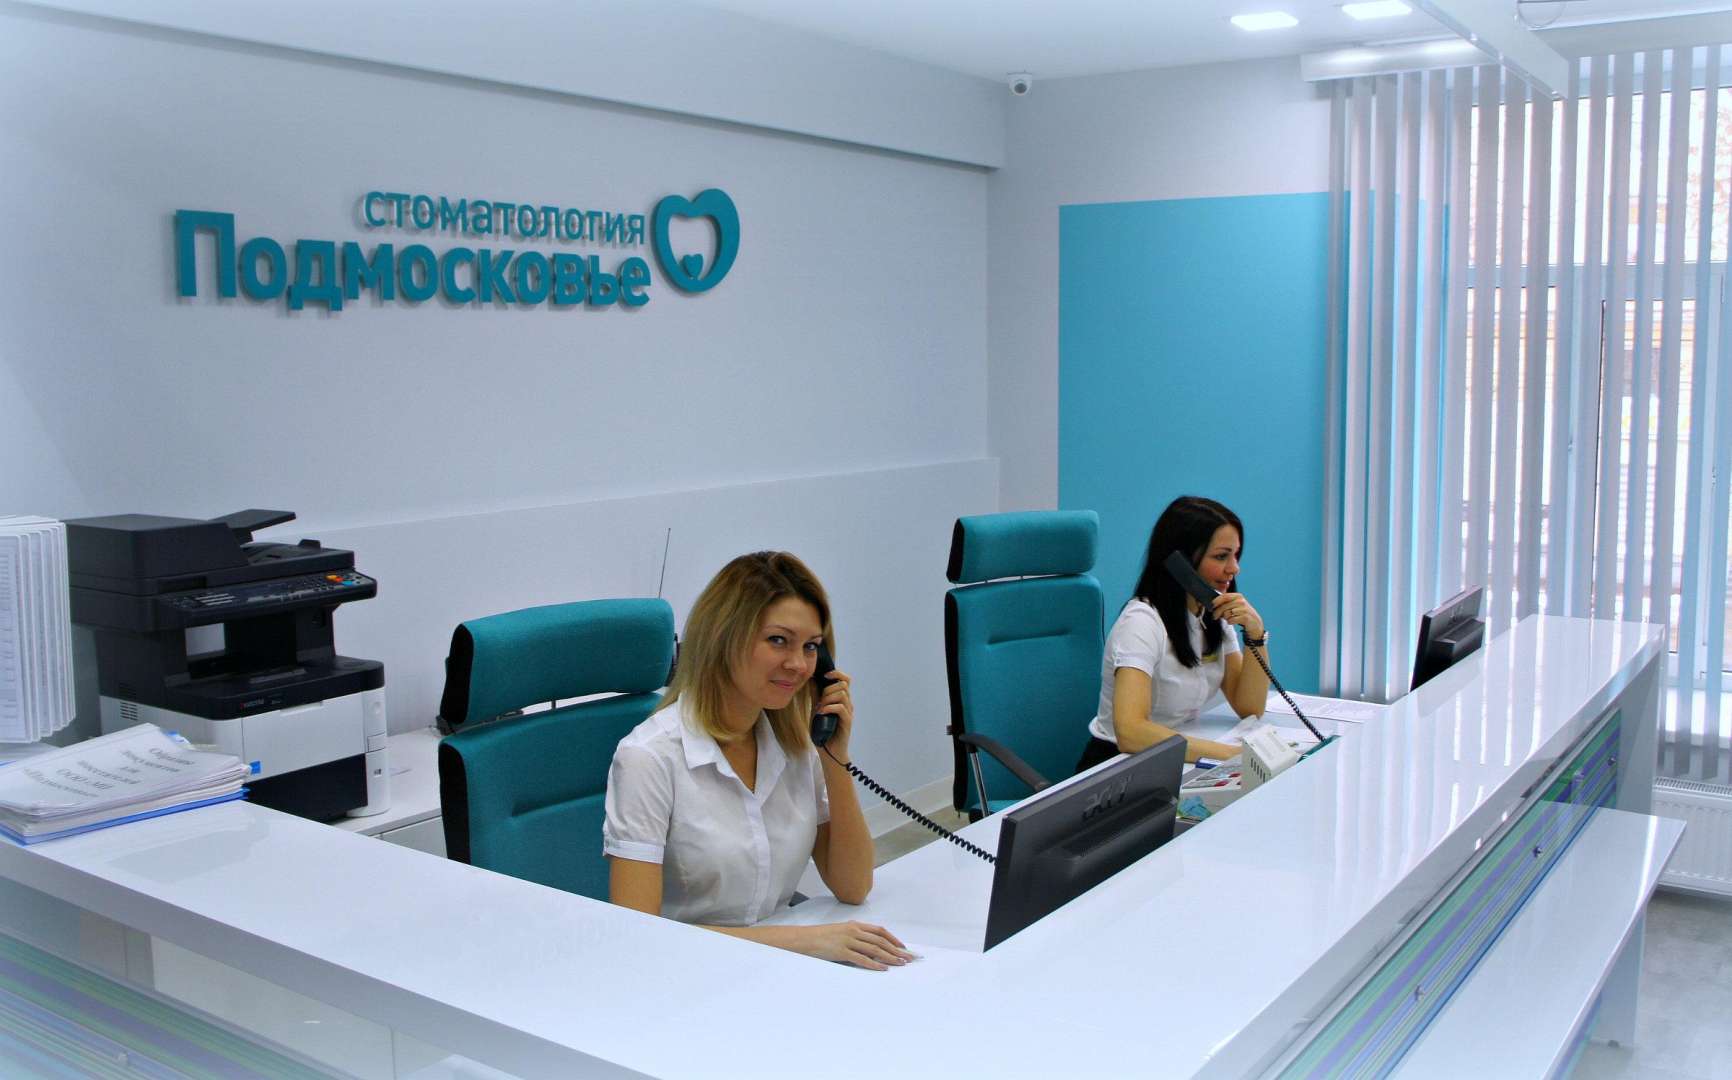 Стоматологическая клиника подмосковье ярославль официальный сайт